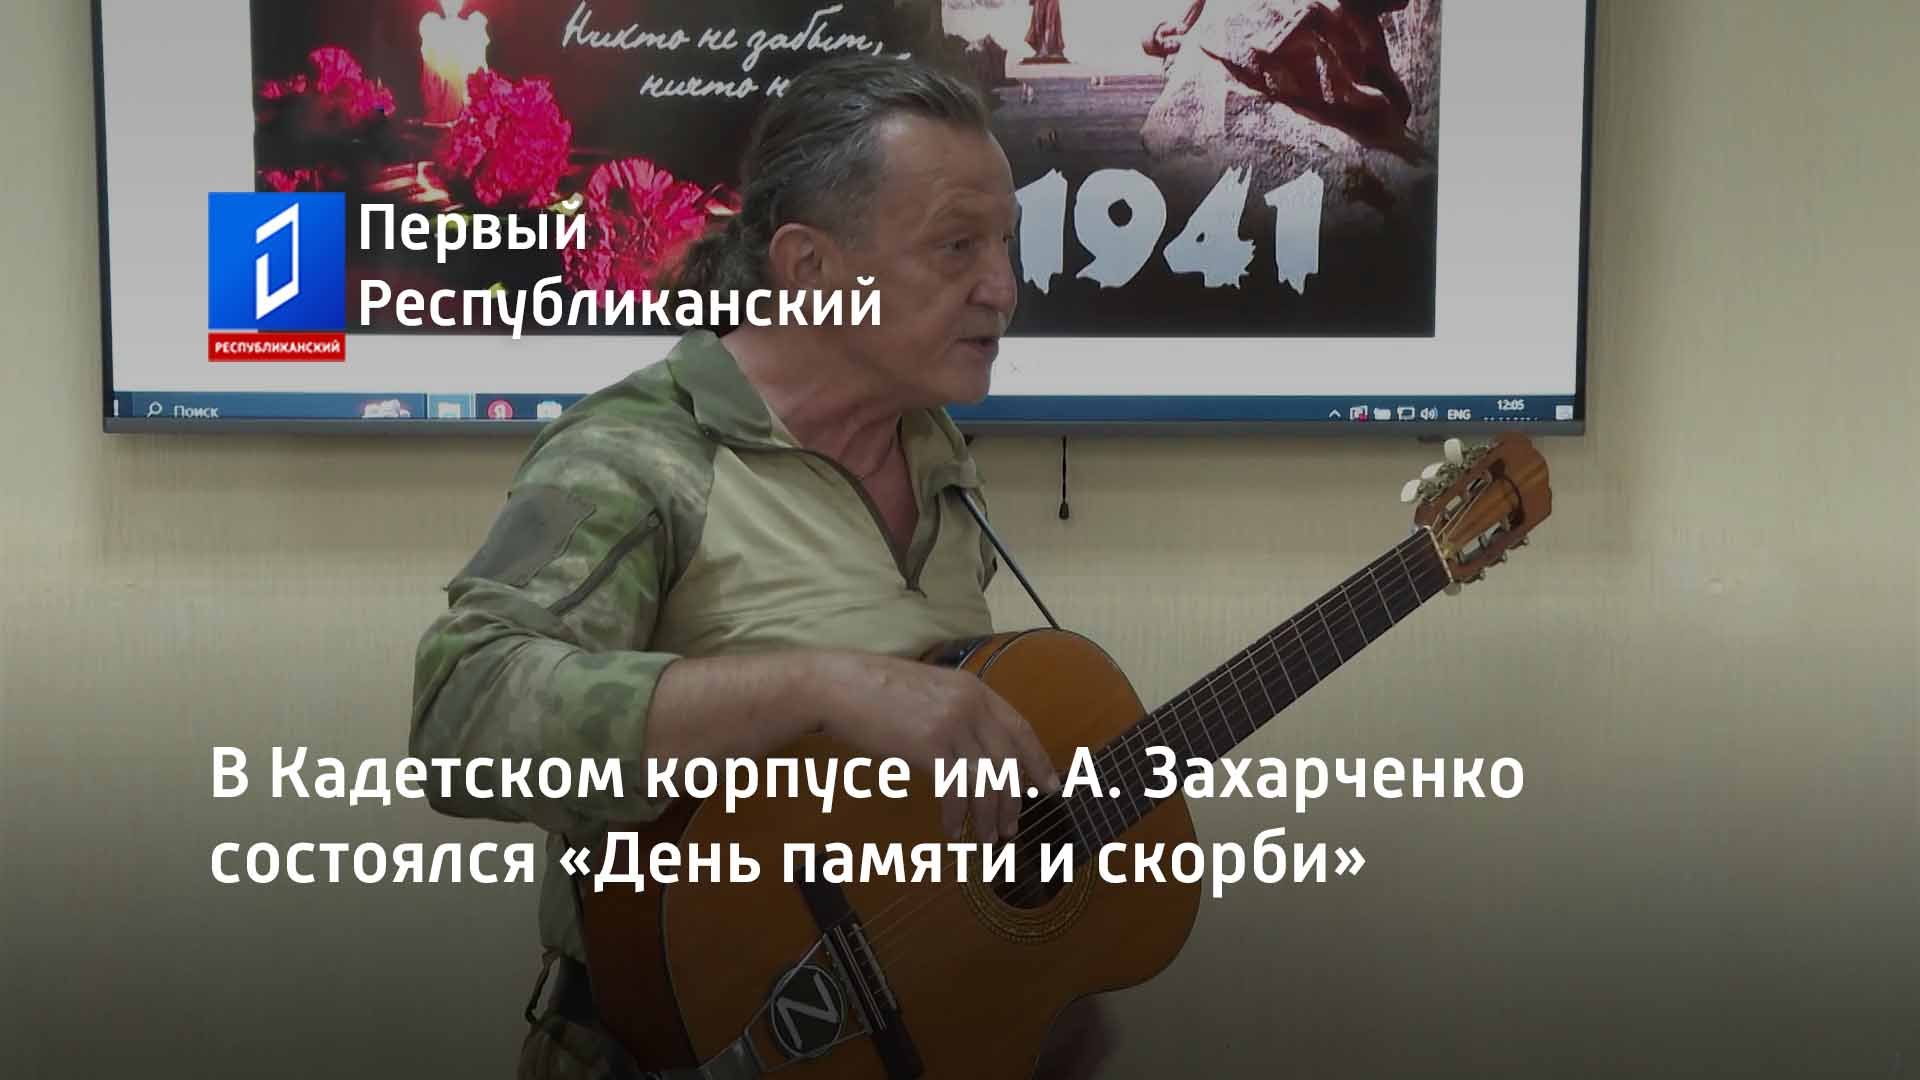 В Кадетском корпусе им. А. Захарченко состоялся «День памяти и скорби»